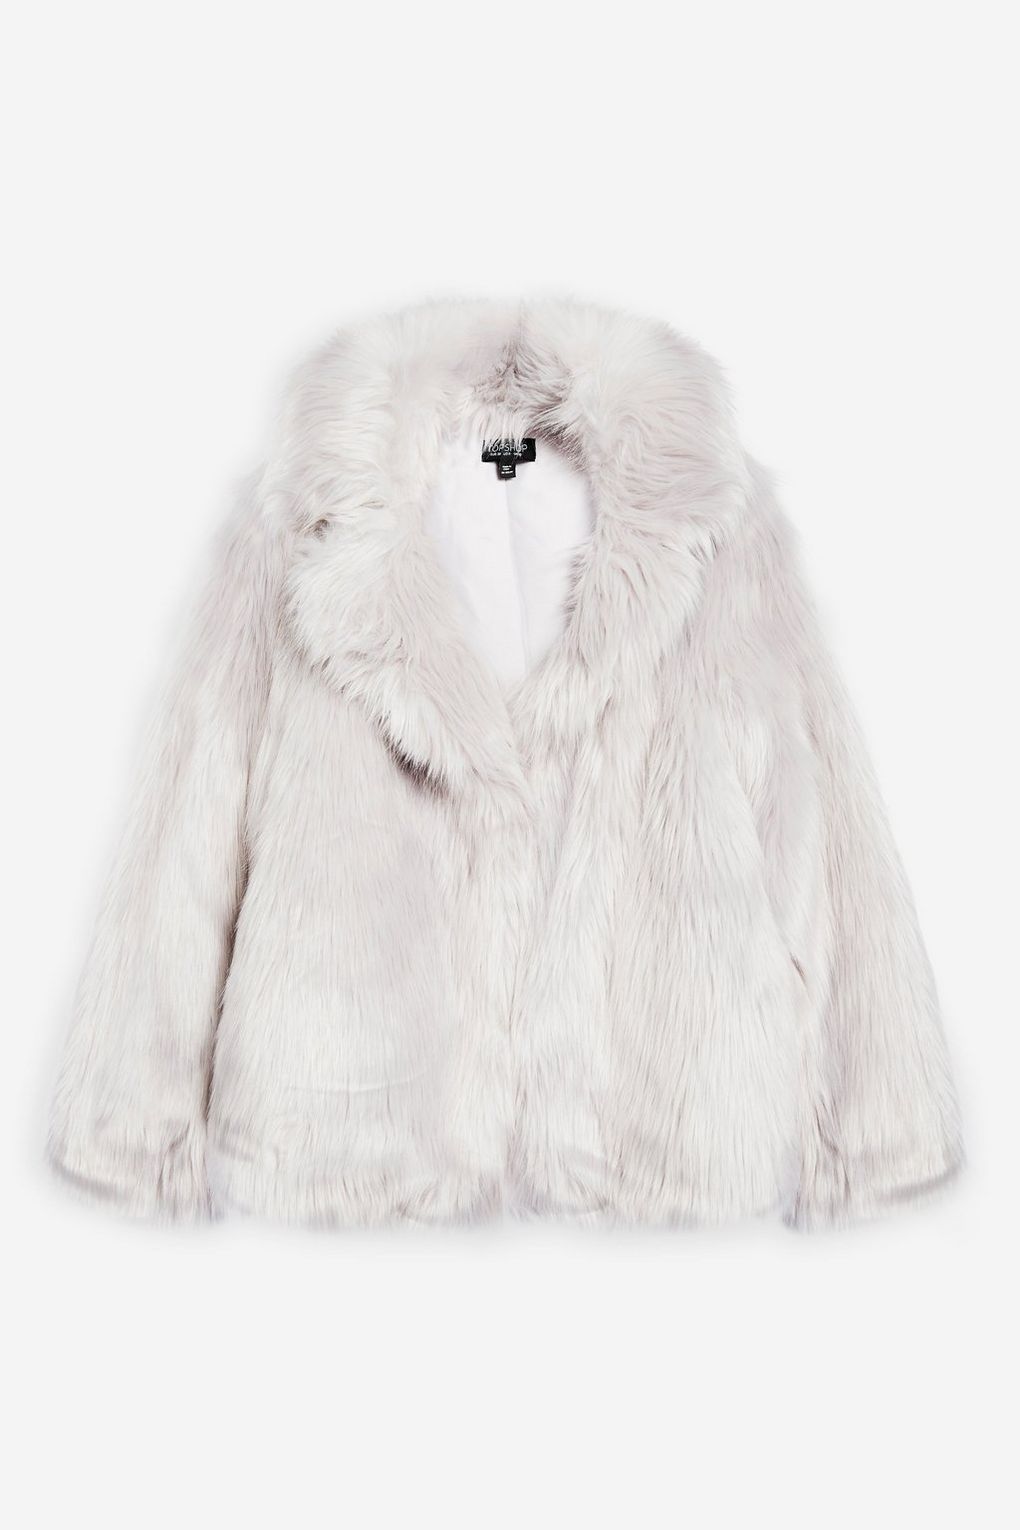 Topshop Luxe Faux Fur Coat